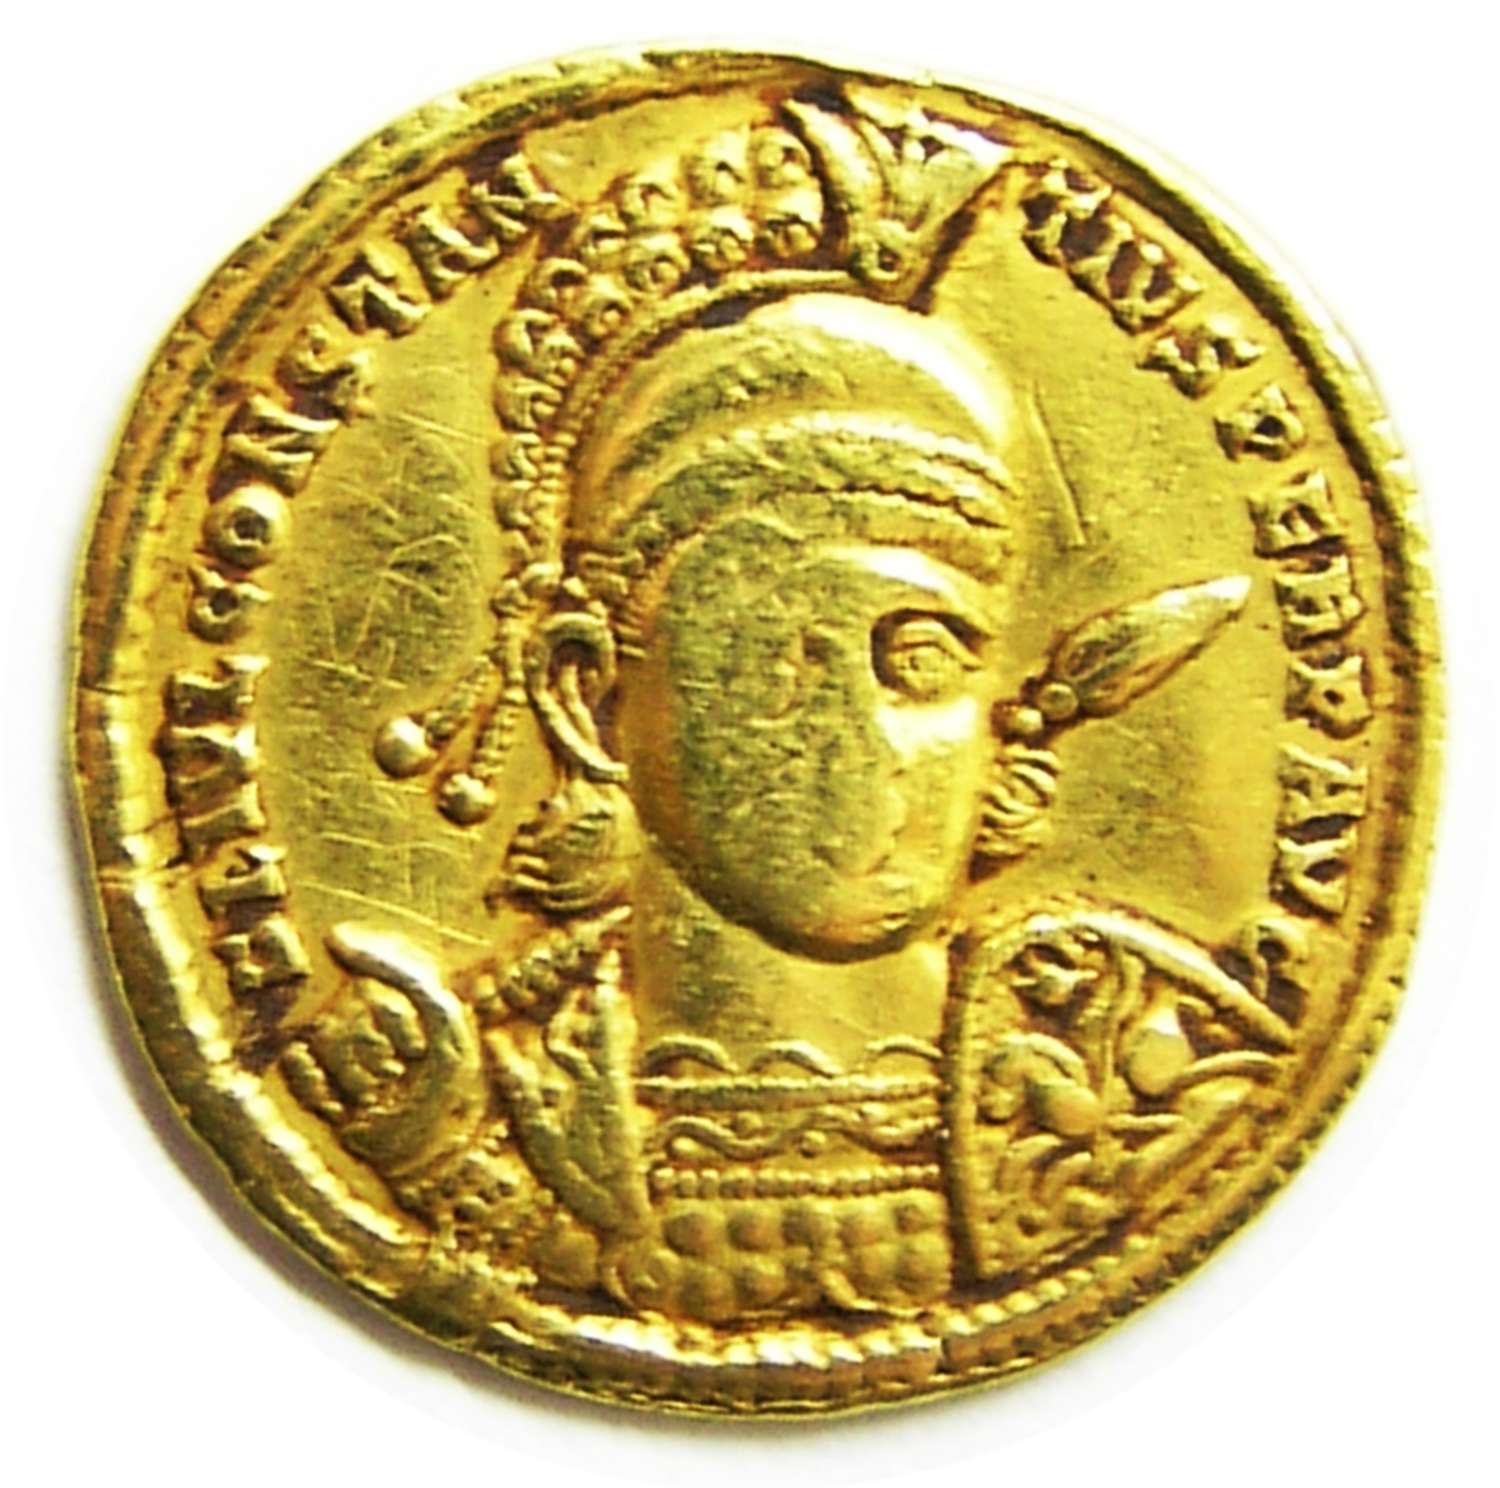 Roman Gold Solidus of Emperor Constantius II from the Sirmium mint